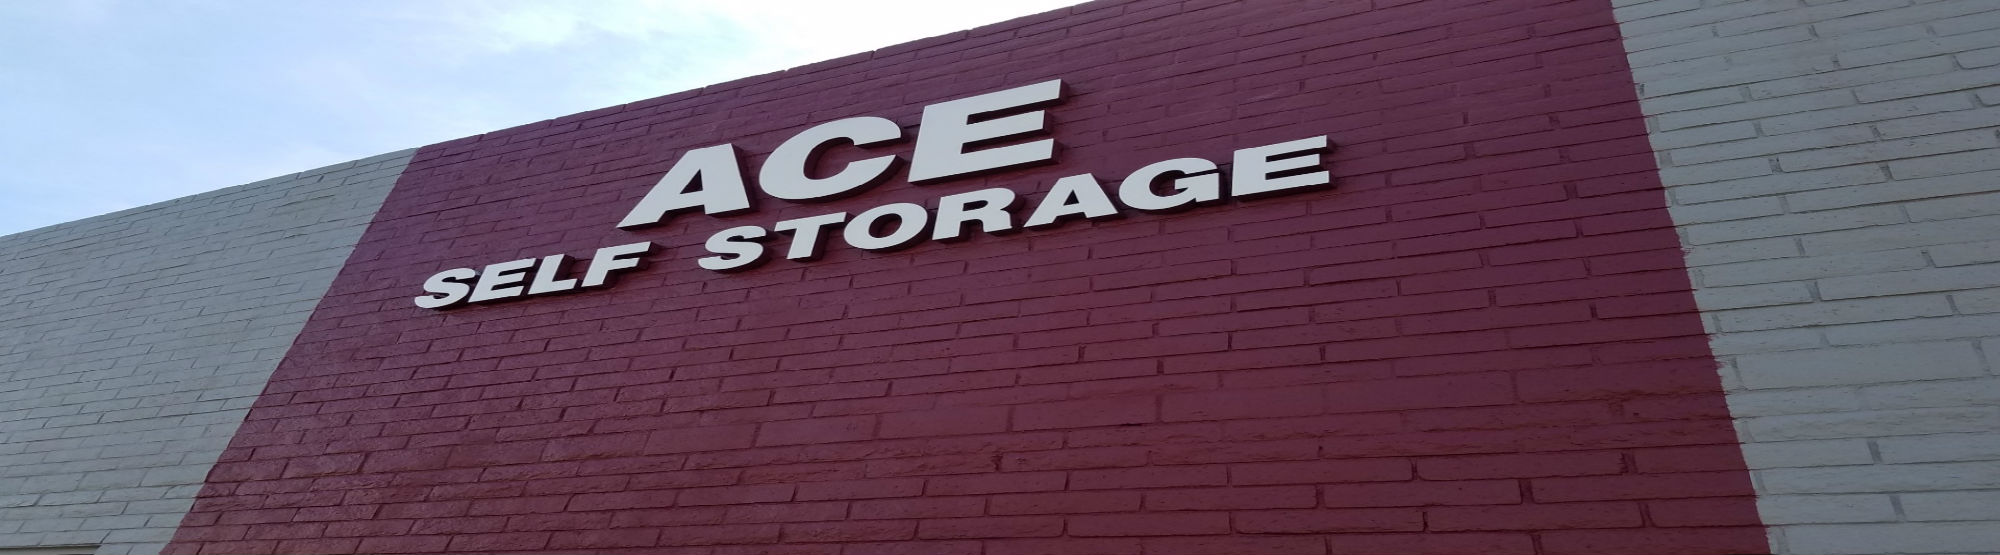 ACE Self Storage in Phoenix, AZ